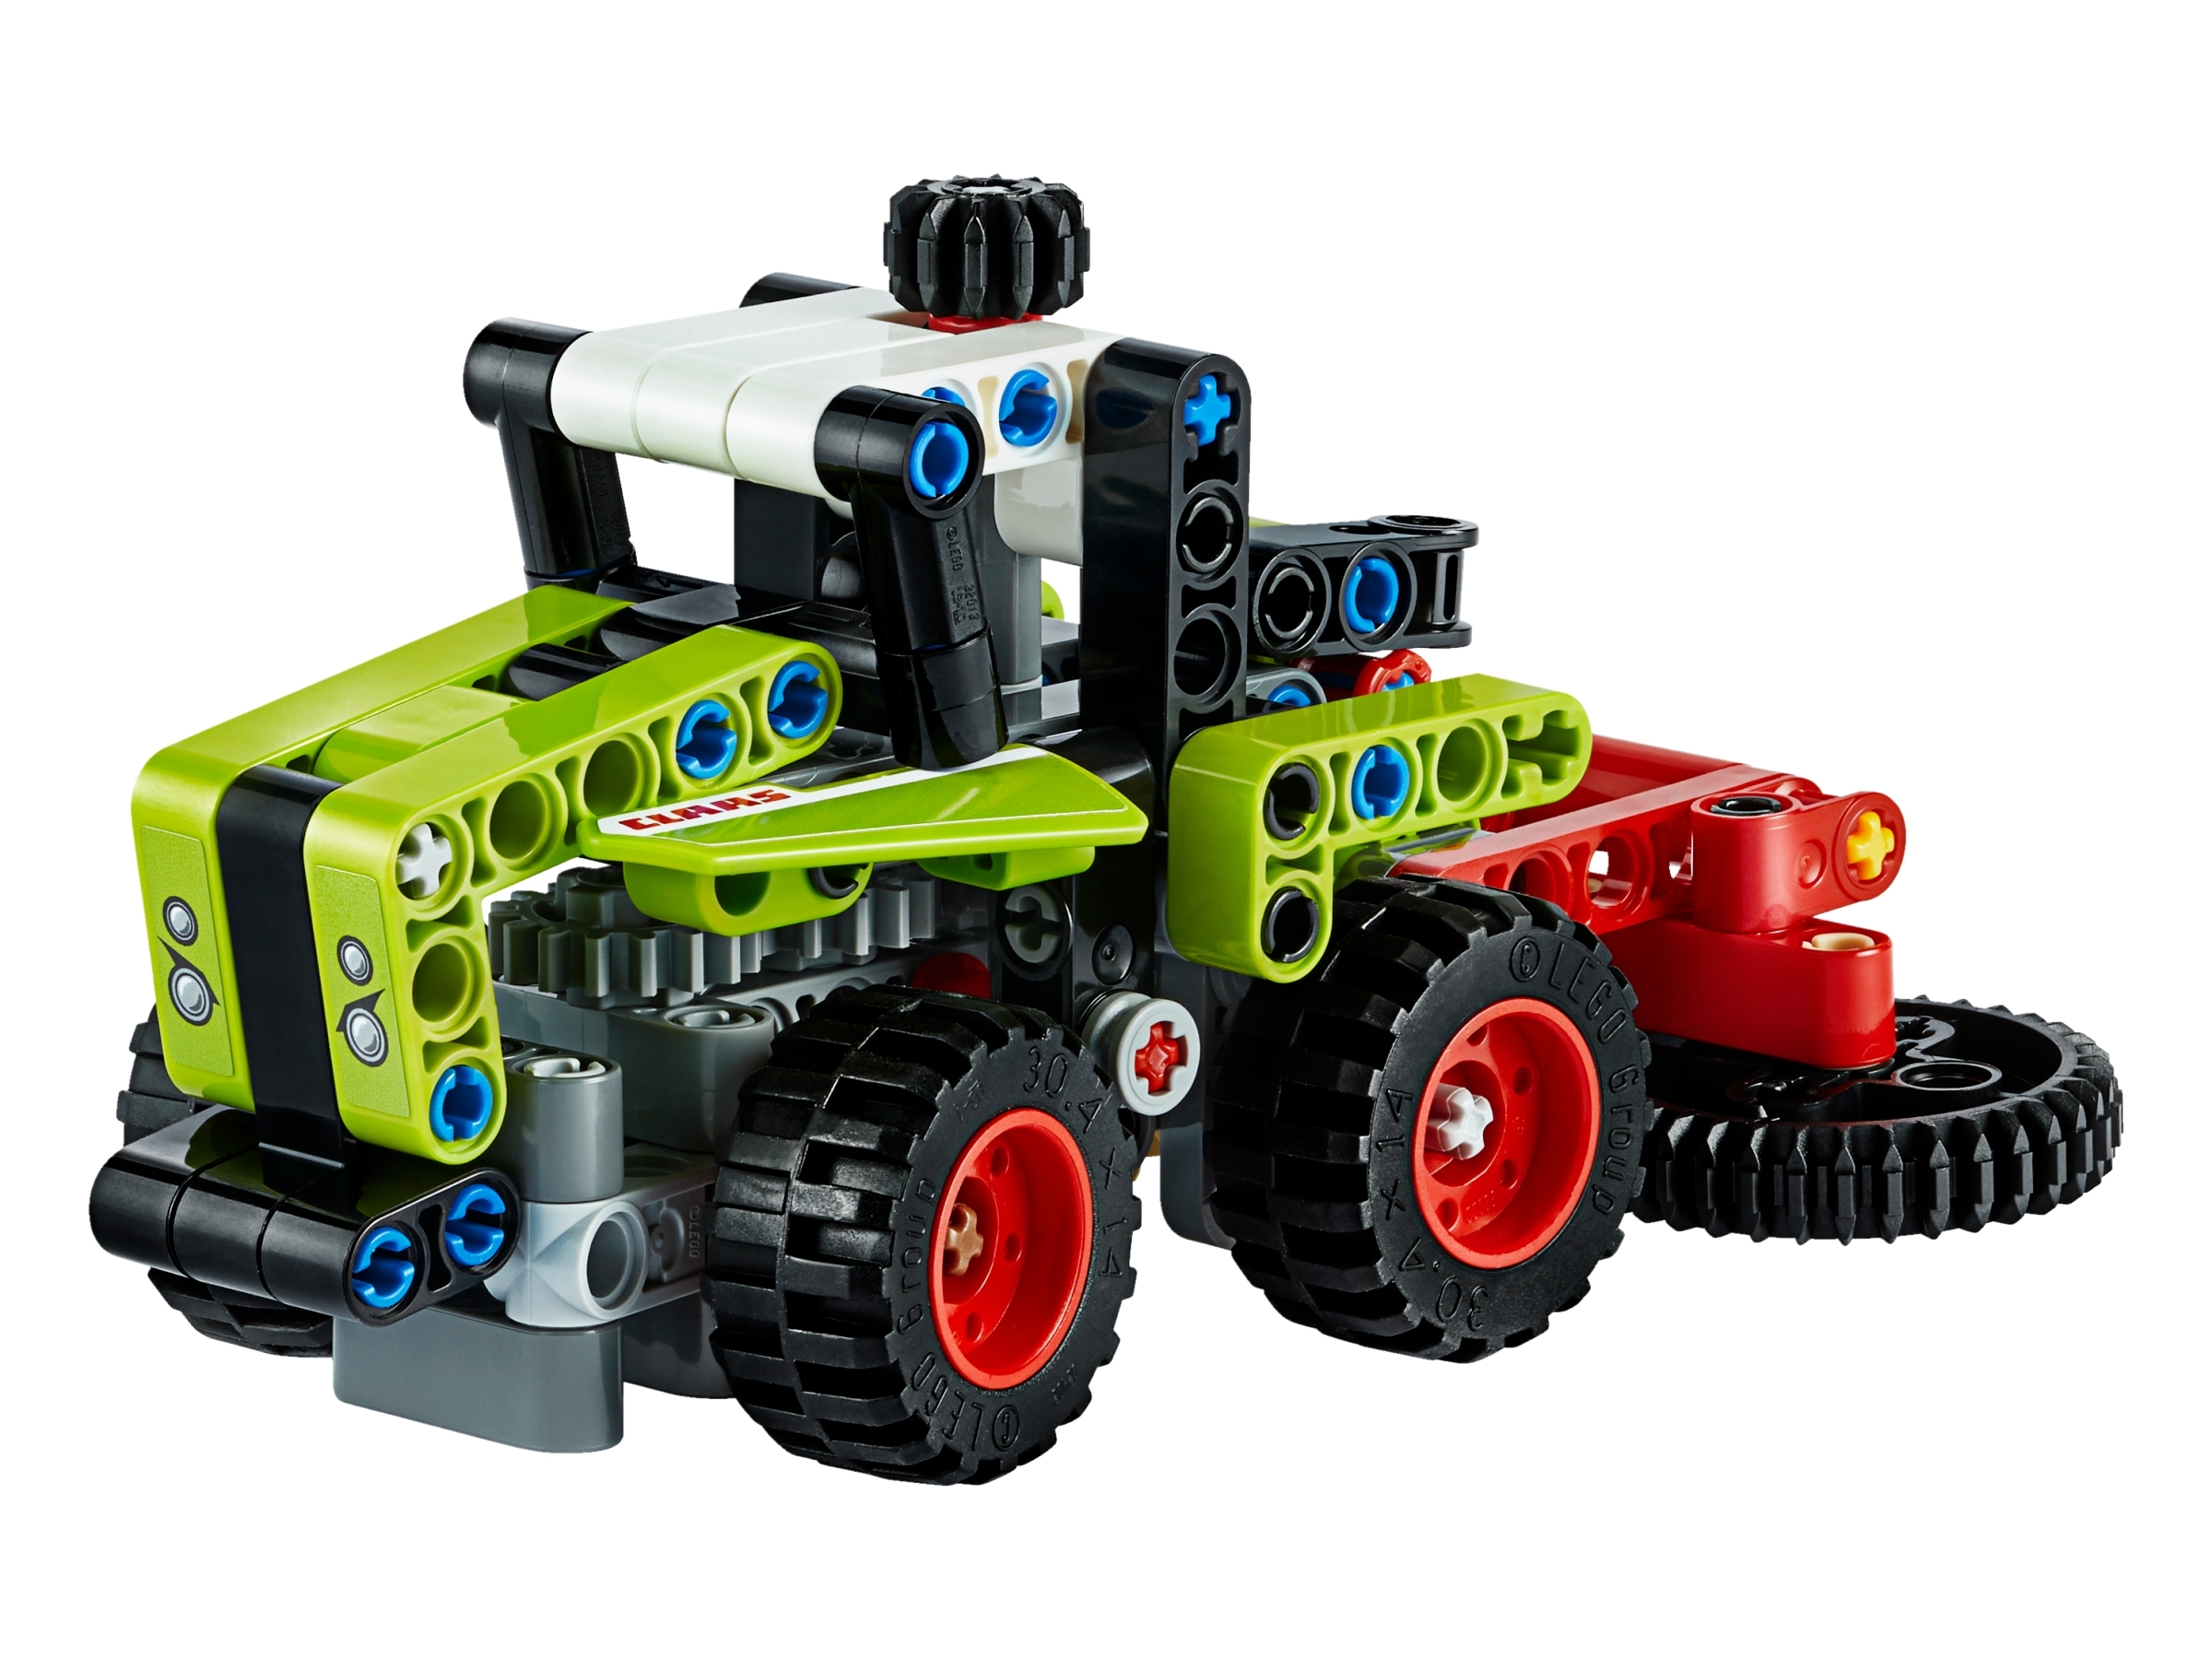 tracteur lego technic